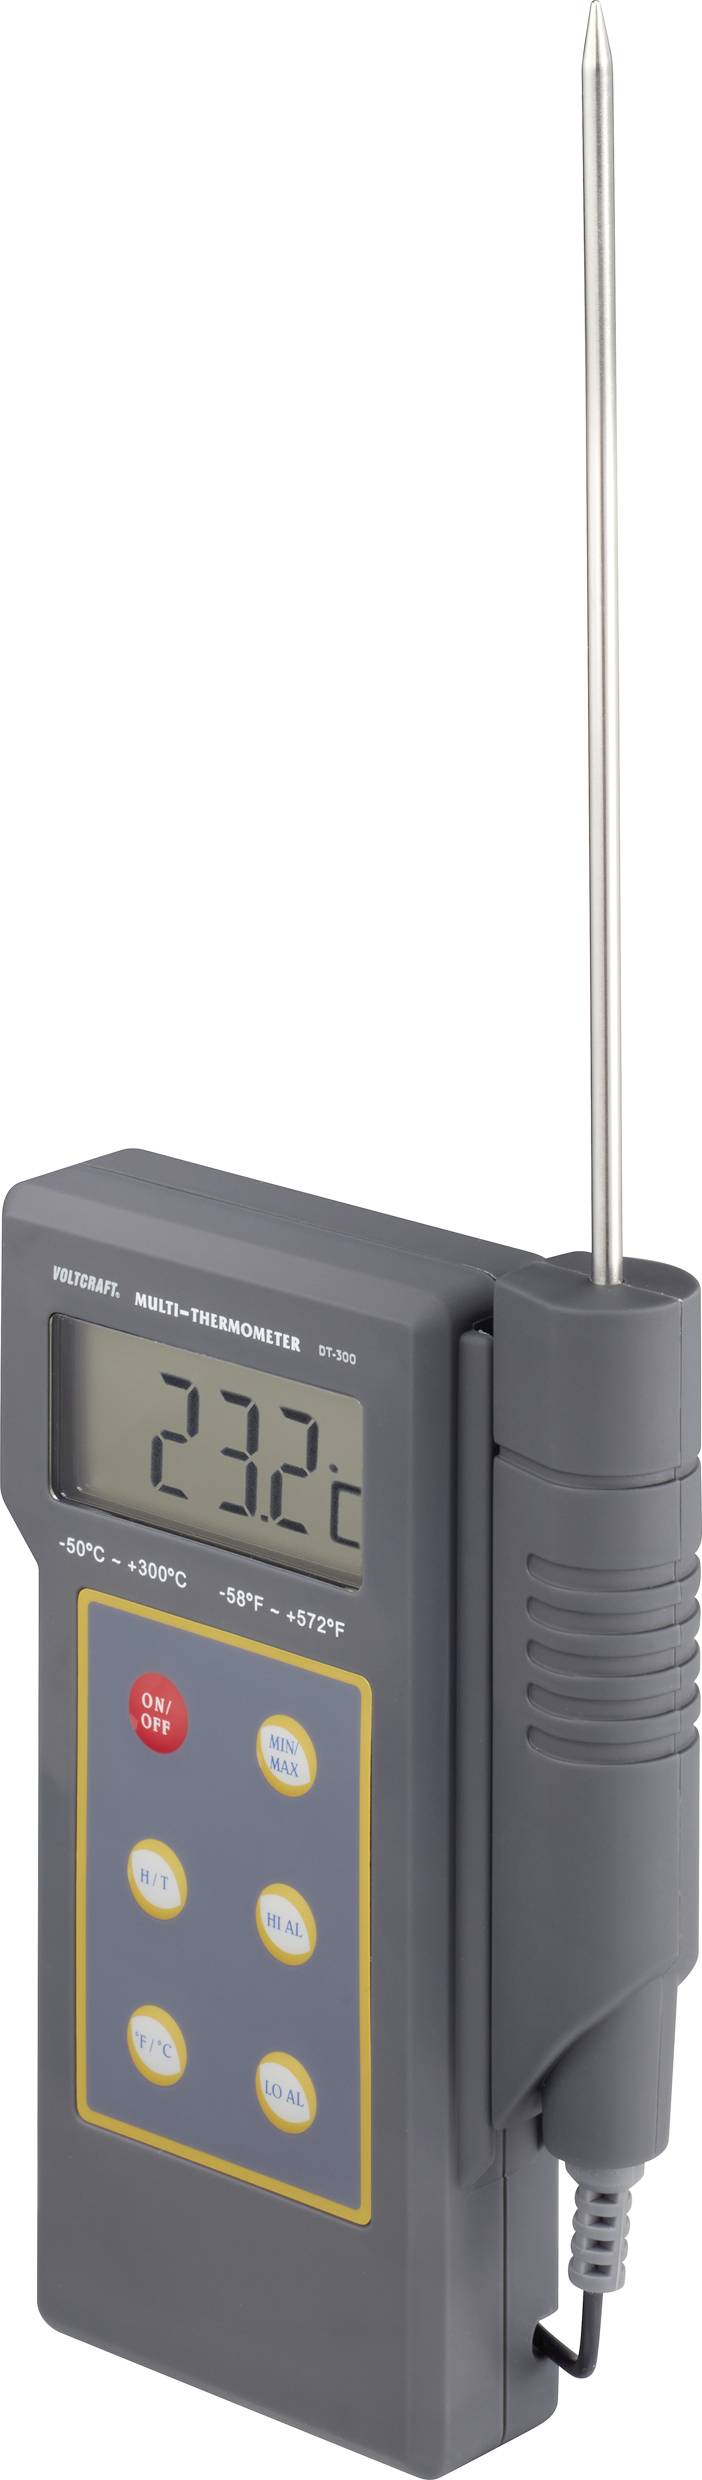 VOLTCRAFT DT-300 Temperatur-Messgerät Kalibriert nach DAkkS -50 bis +300 °C Fühler-Typ K